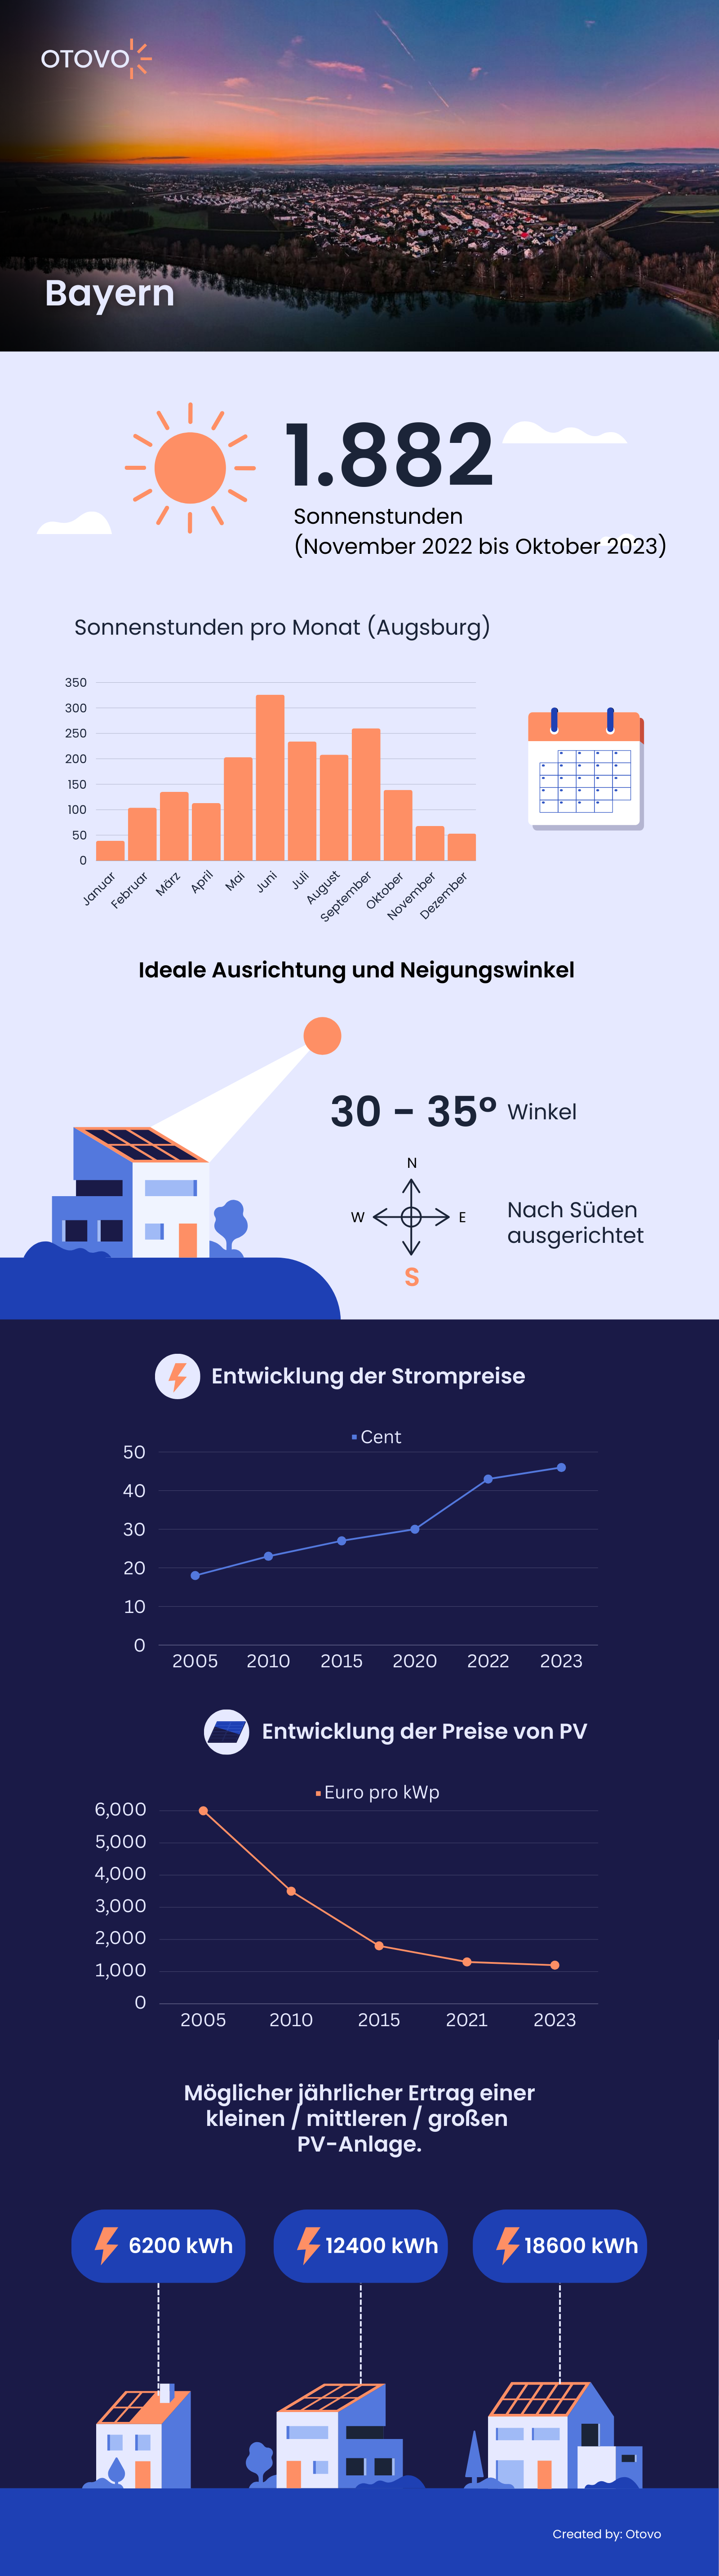 Infografik zu Solaranlagen in Bayern